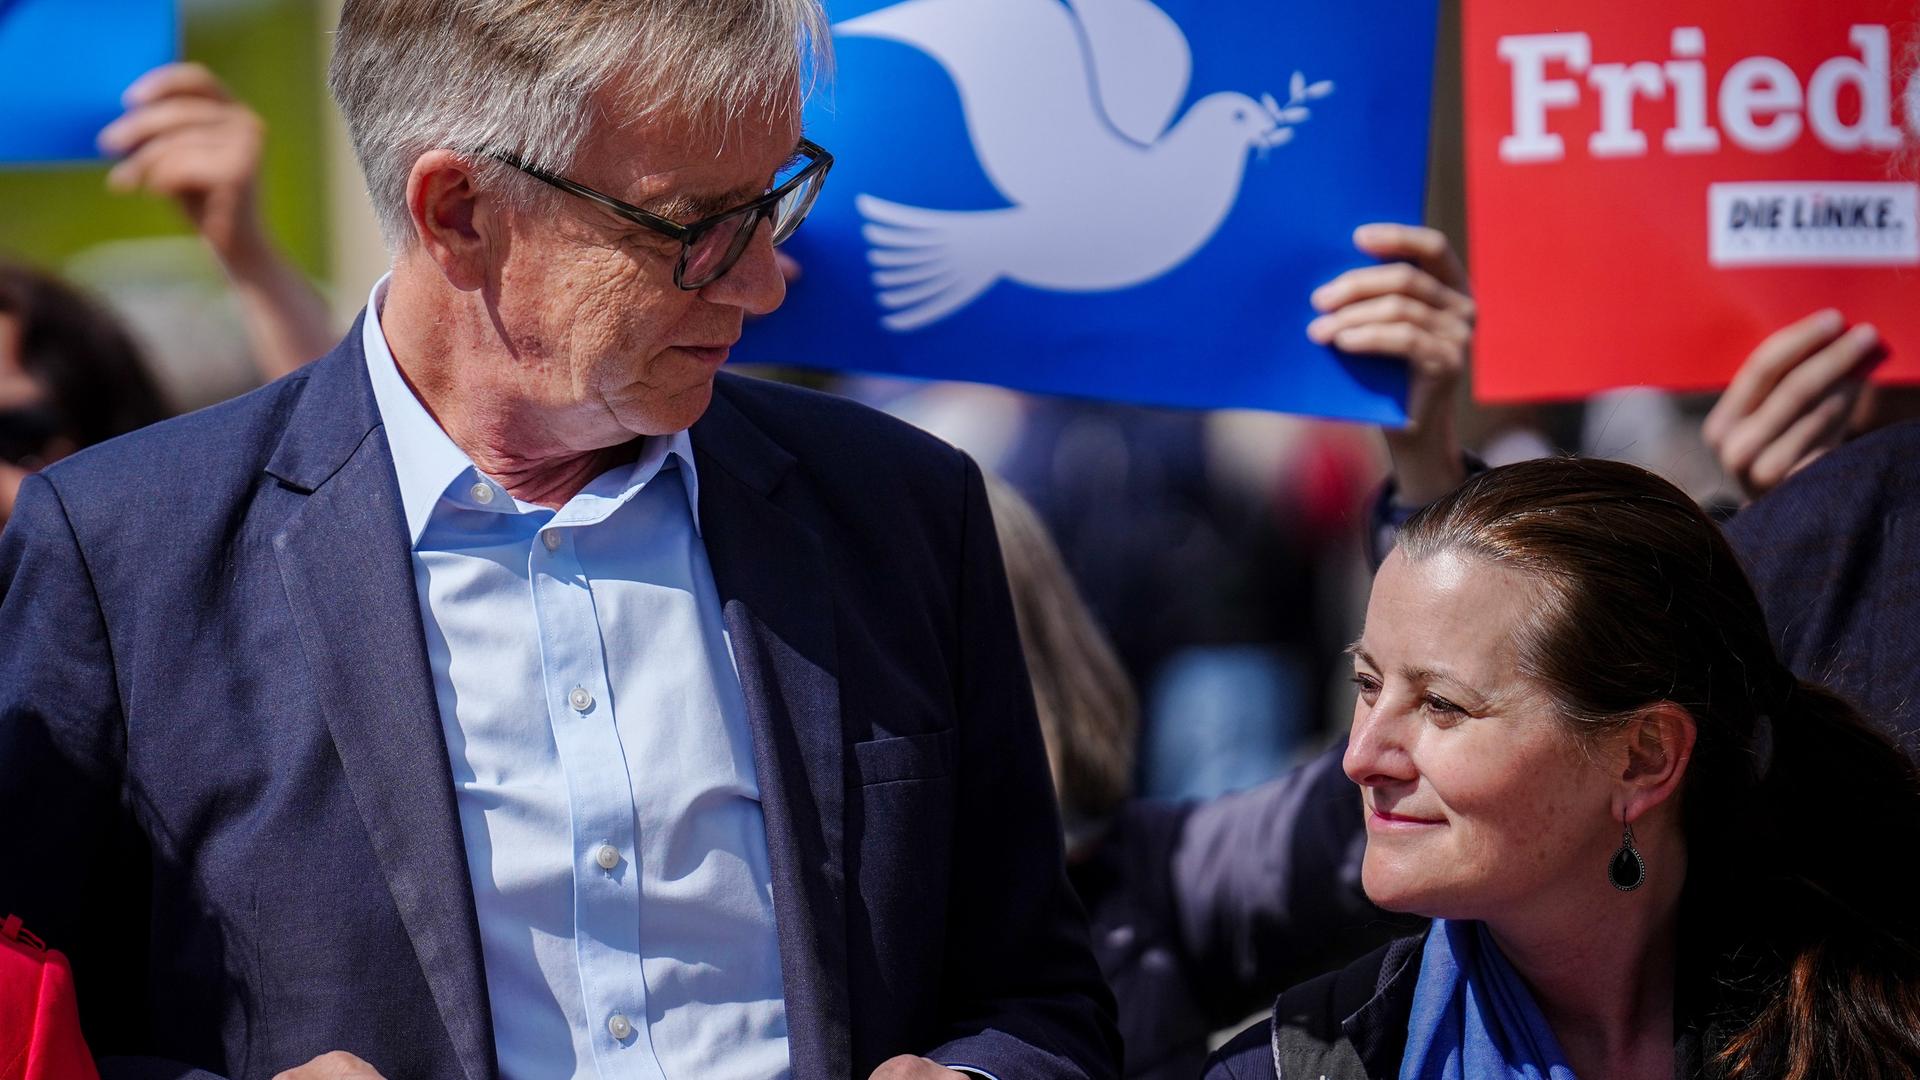 Dietmar Bartsch und Janine Wissler auf einer Demonstration, imi Hintergrund eine weiße Friedenstaube auf einem Plakat.